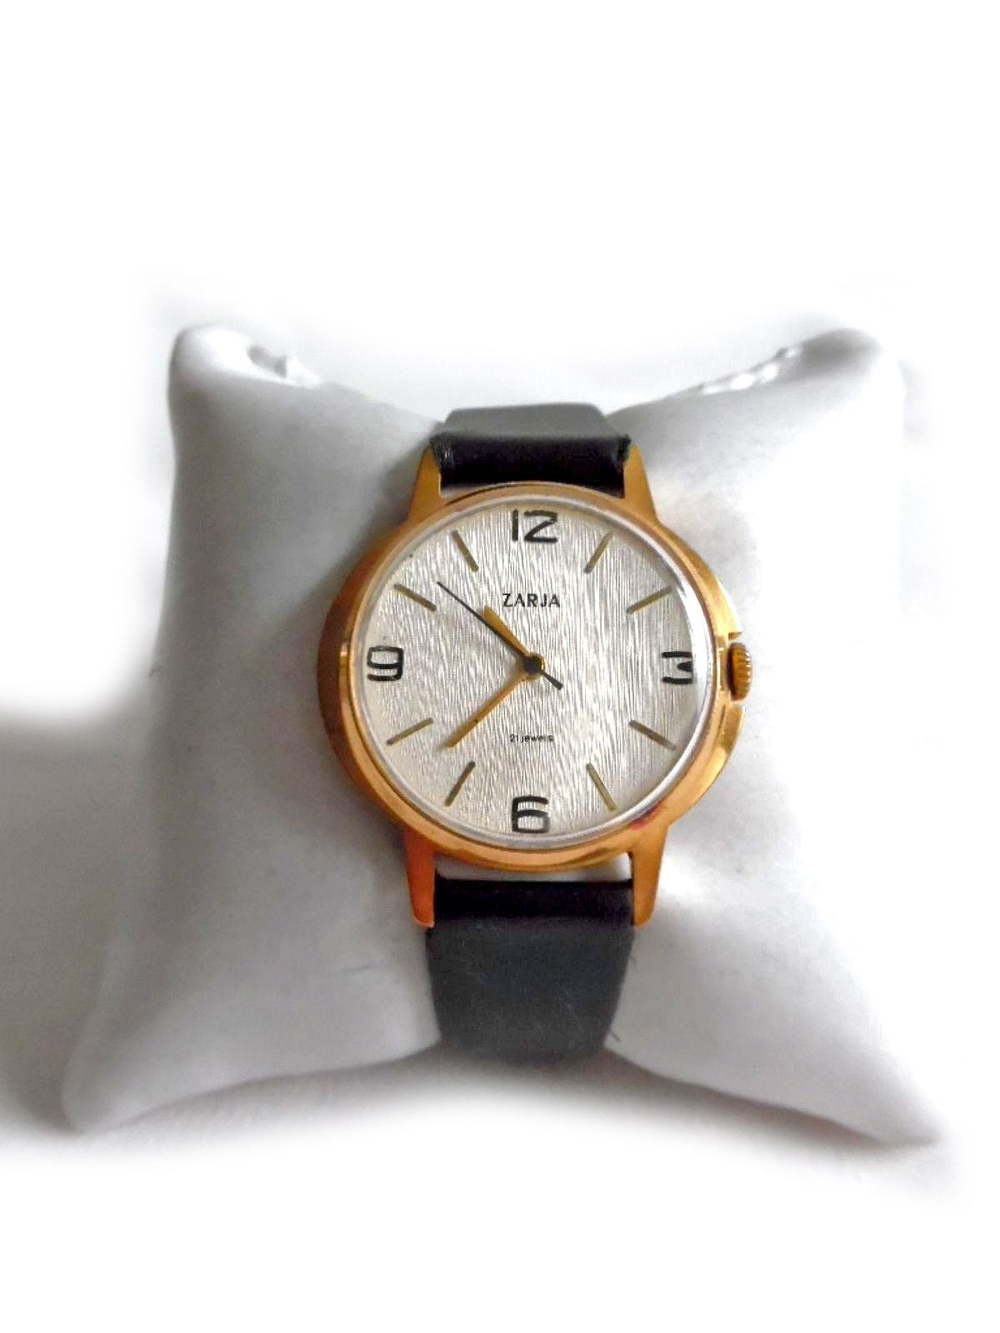 Seltene Armbanduhr von Zarja